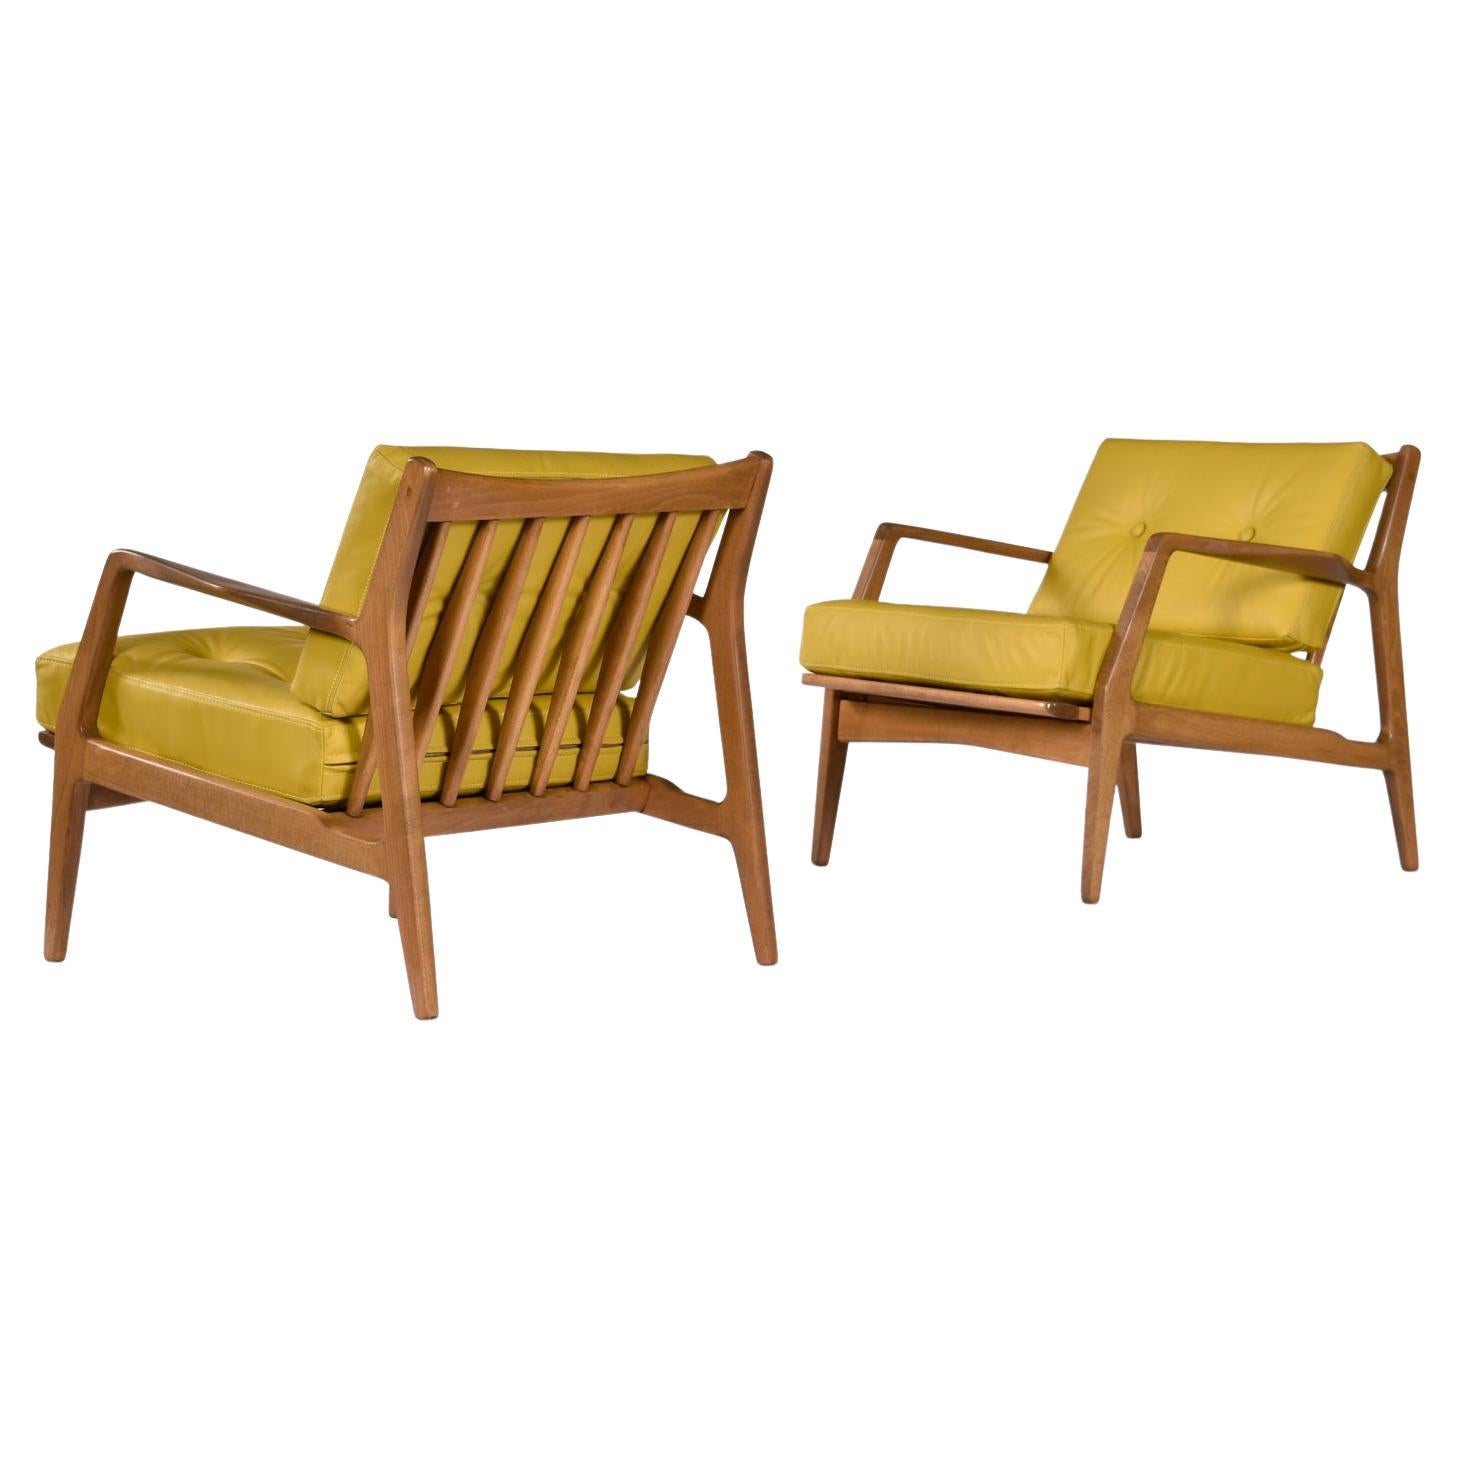 Paire de chaises longues numéro 596, conçues par Lawrence Peabody pour Selig. Replacé professionnellement dans un cuir pleine fleur jaune lin. Cette chaise de salon indémodable est la quintessence du style moderne du milieu du siècle, qui a inspiré